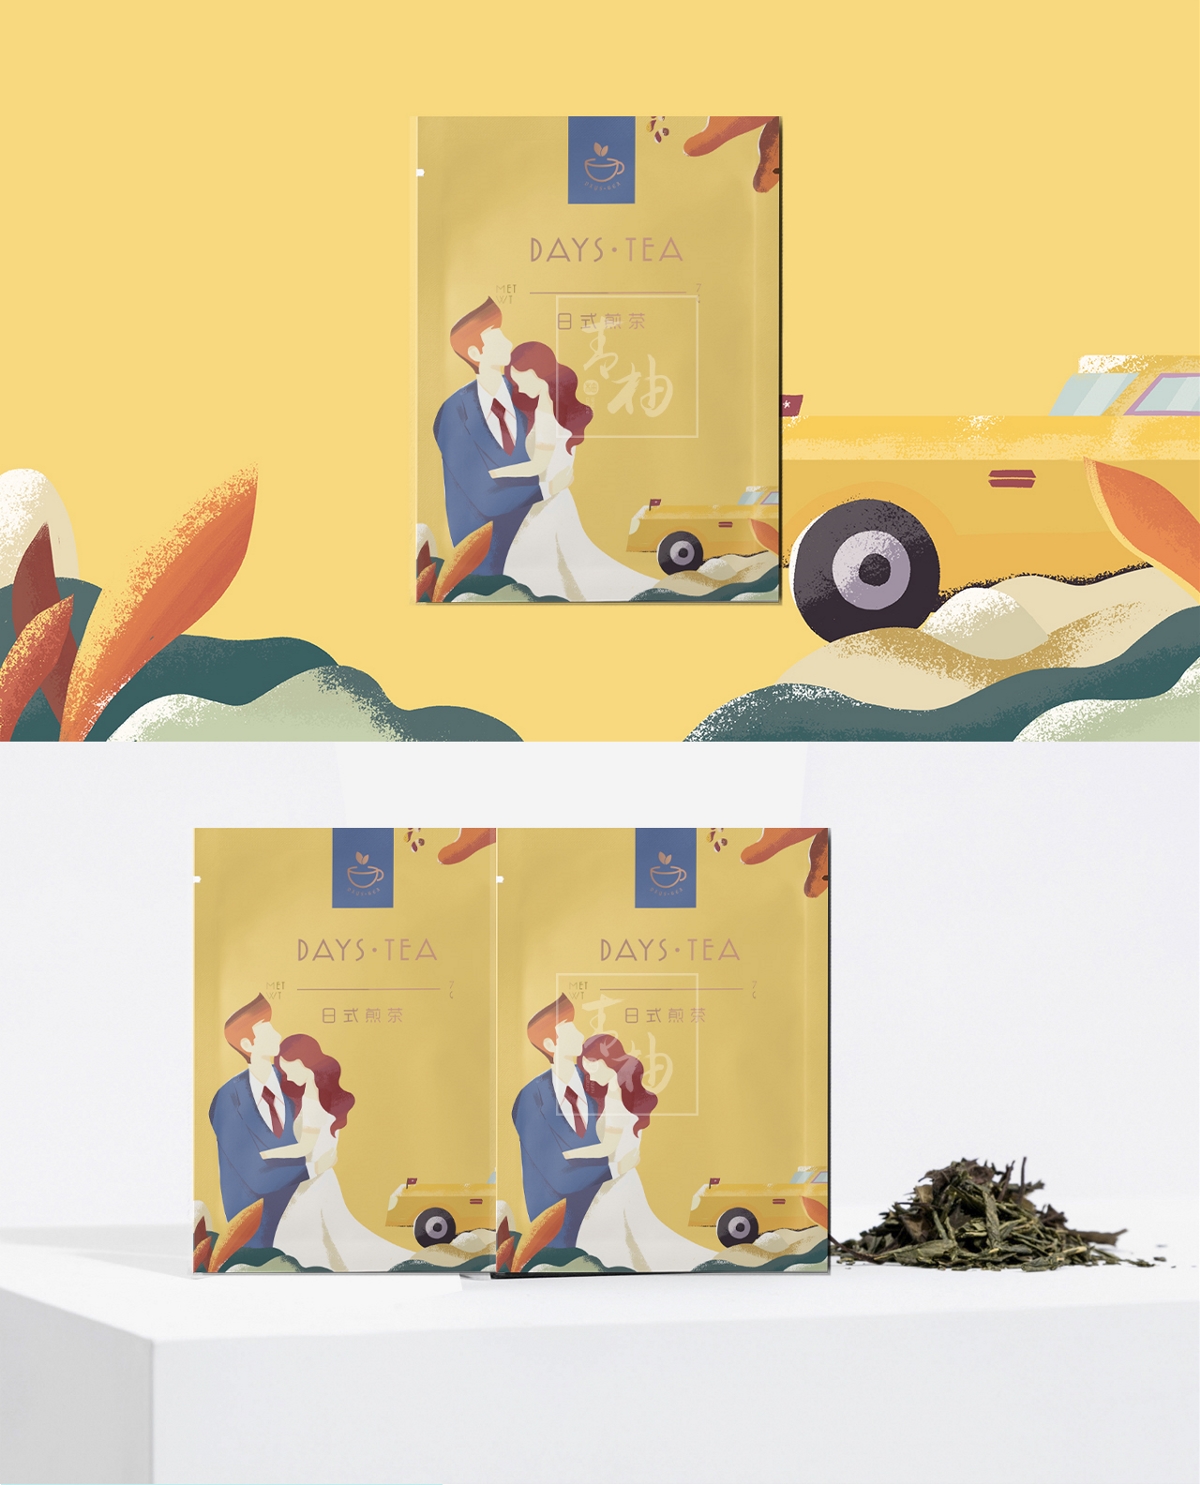  原创花茶品牌系列包装设计/ logo设计 - 青柚设计原创出品 